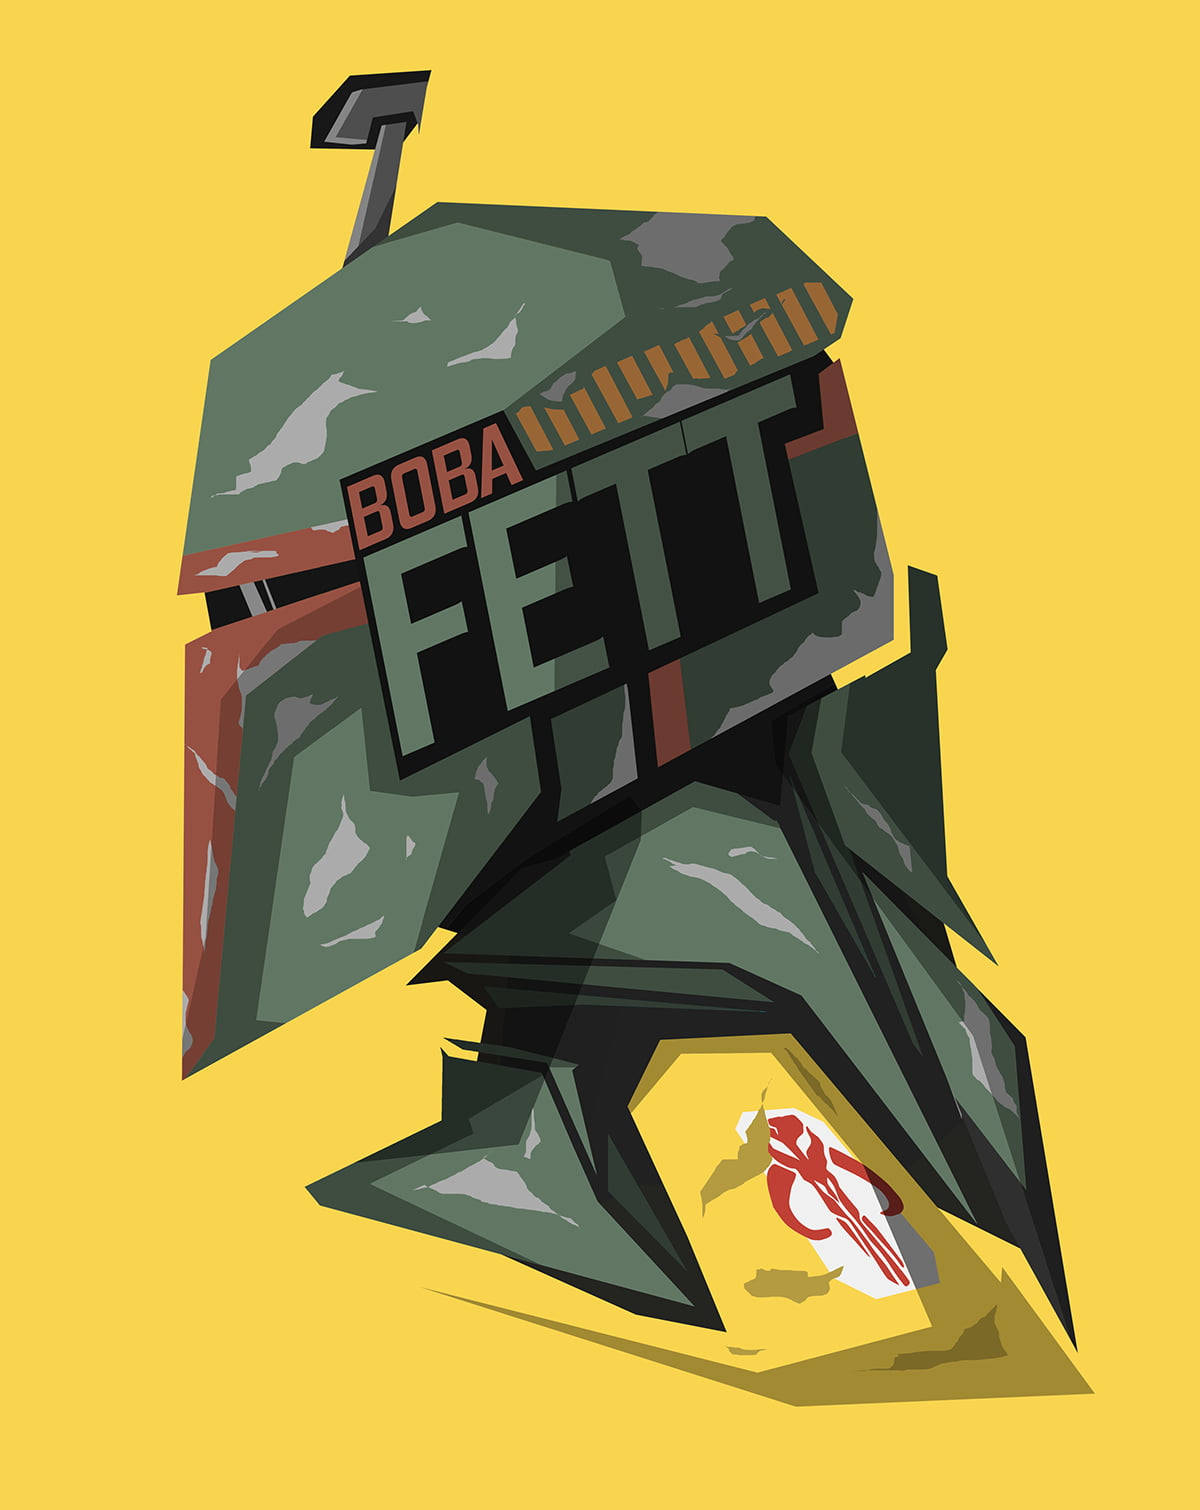 Star Wars Ipad Boba Fett Artwork Wallpaper